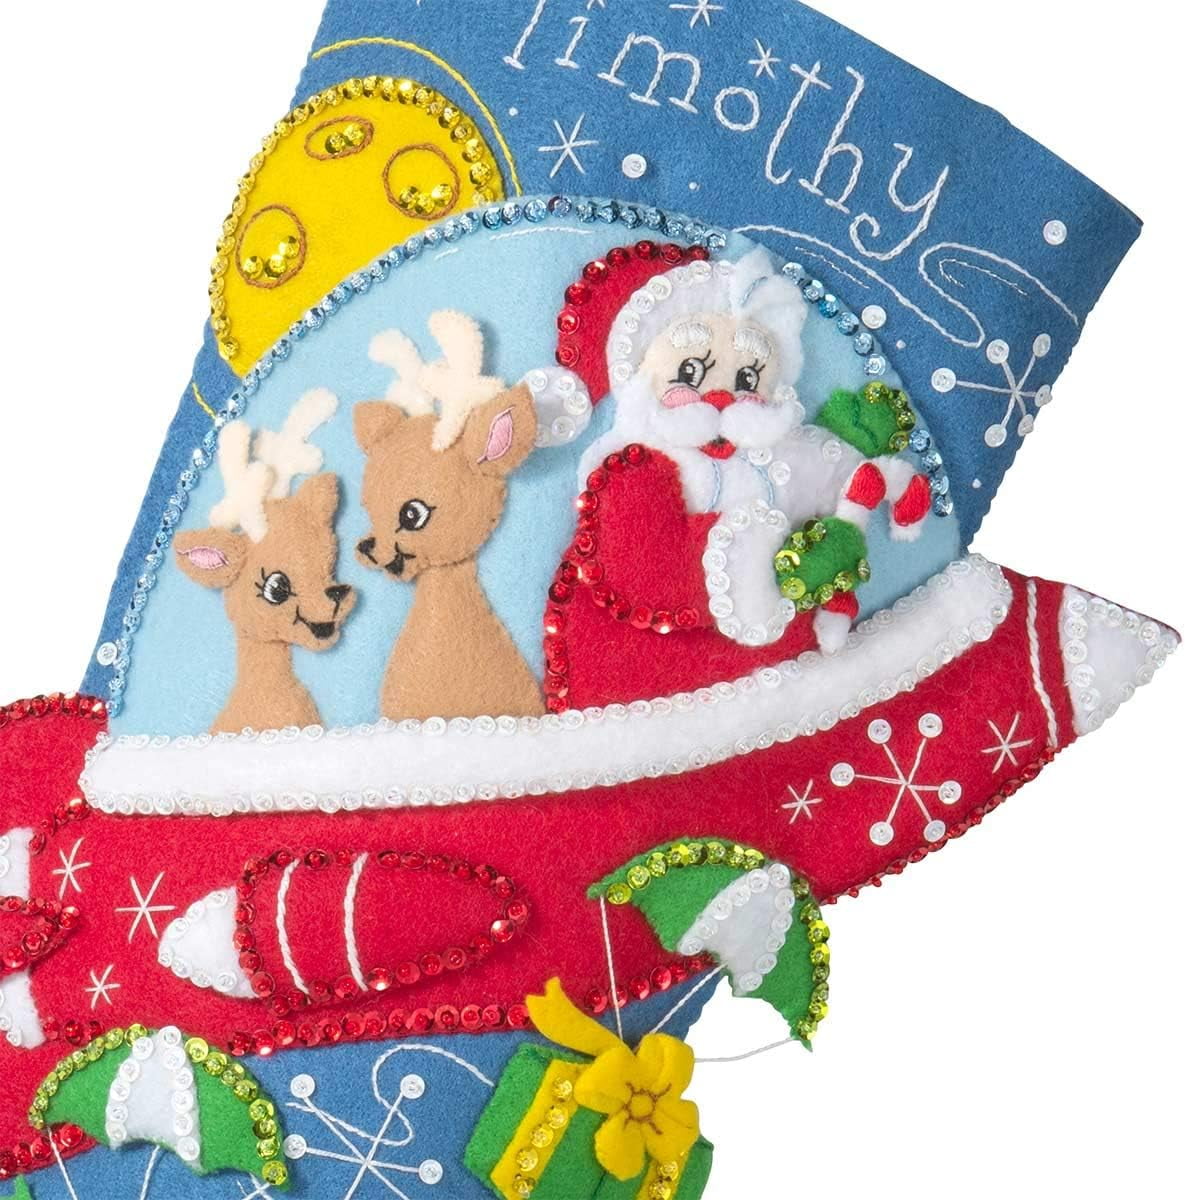 Shop Plaid Bucilla ® Seasonal - Felt - Stocking Kits - A Christmas Skate -  86979E - 86979E